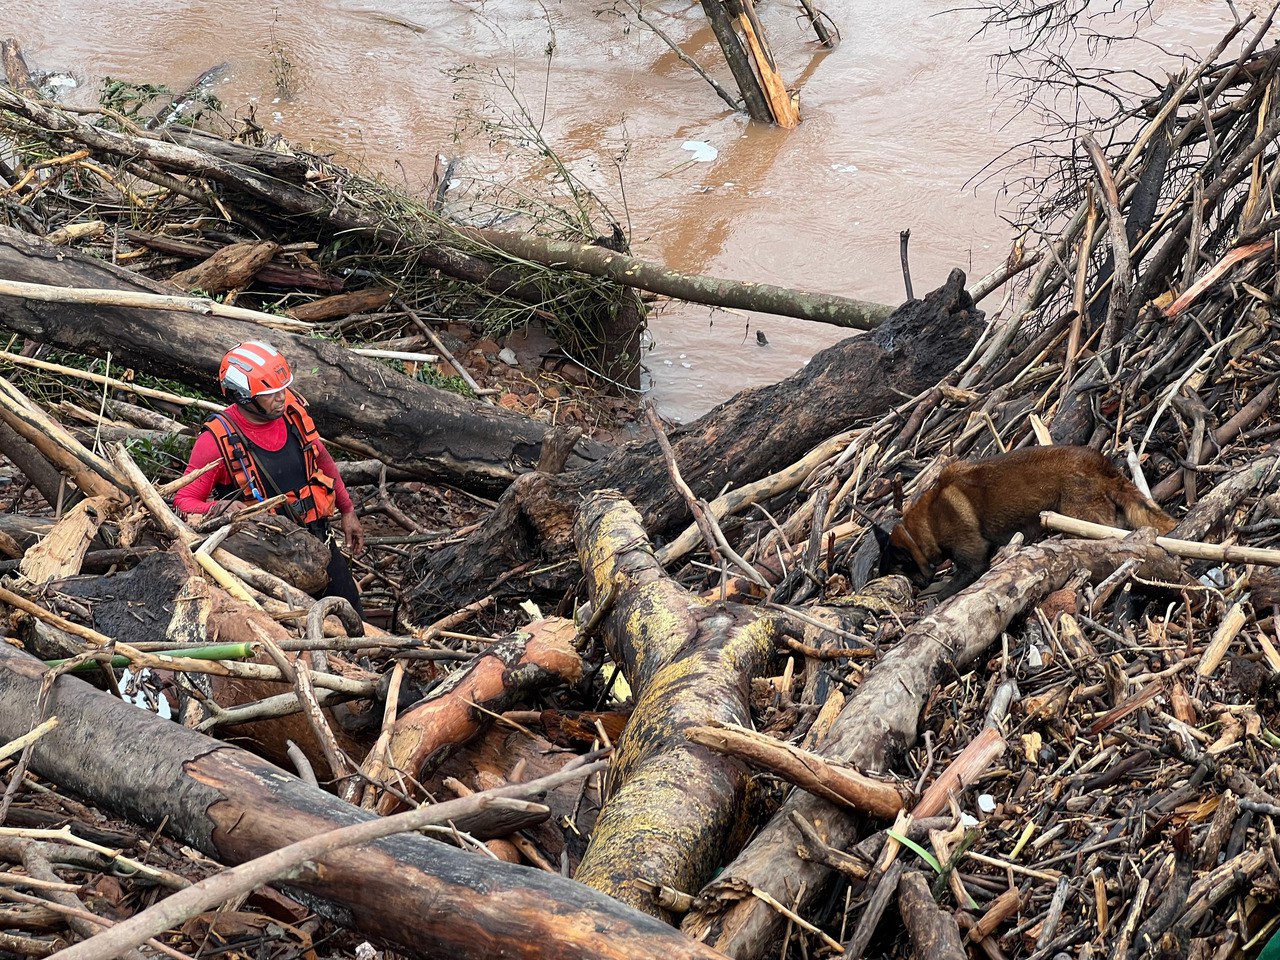 Bombeiro mineiro realiza buscas ipor vítimas em área de deslizamento, em Bento Gonçalves (RS)